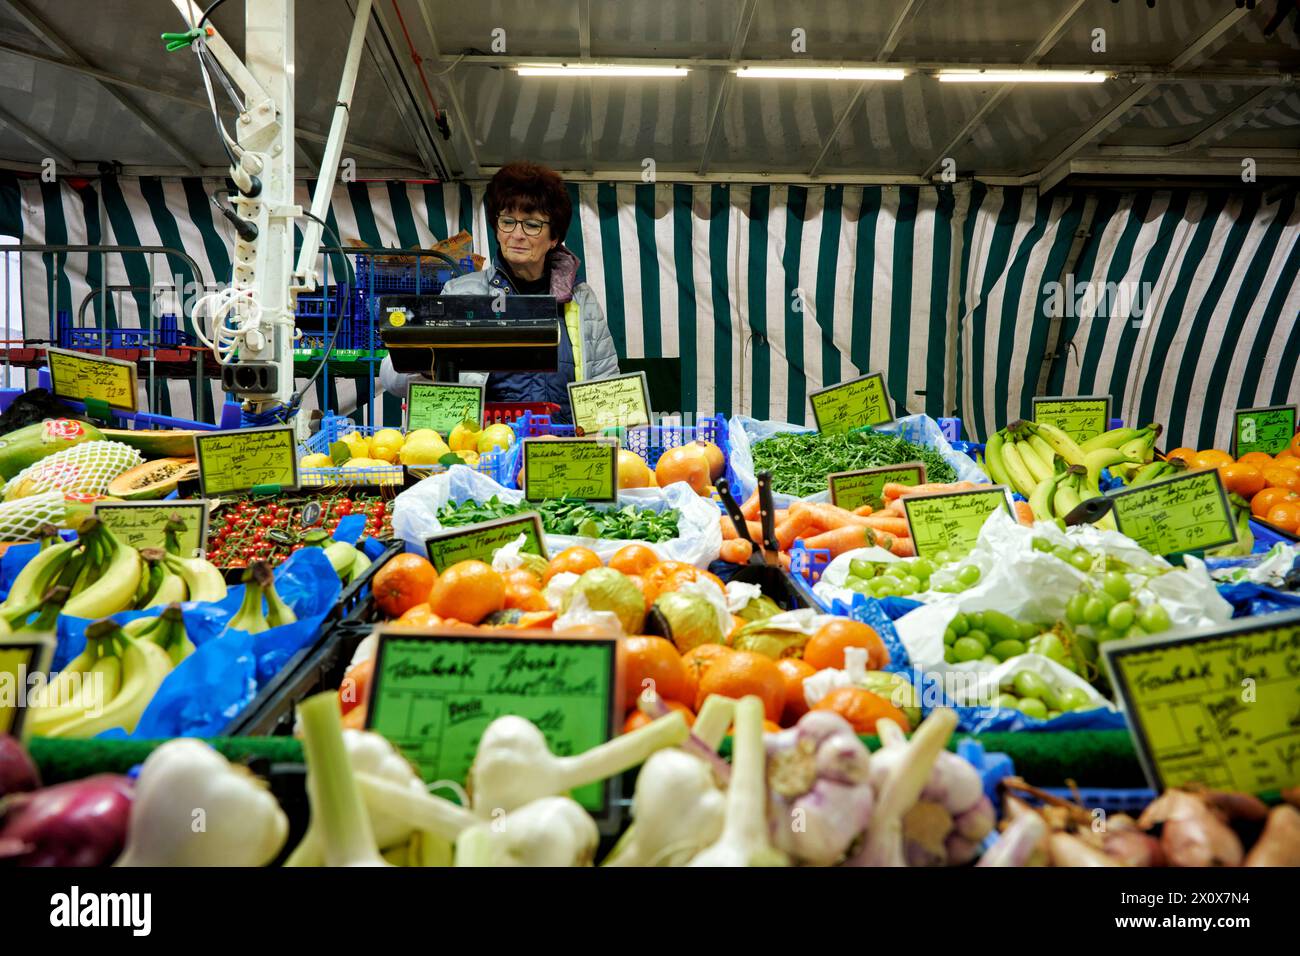 Reichhaltige Obst- und Gemüseauswahl an einem Marktstand. Eine Verkäuferin steht im Hintergrund an einer Waage und wiegt aus. Stock Photo